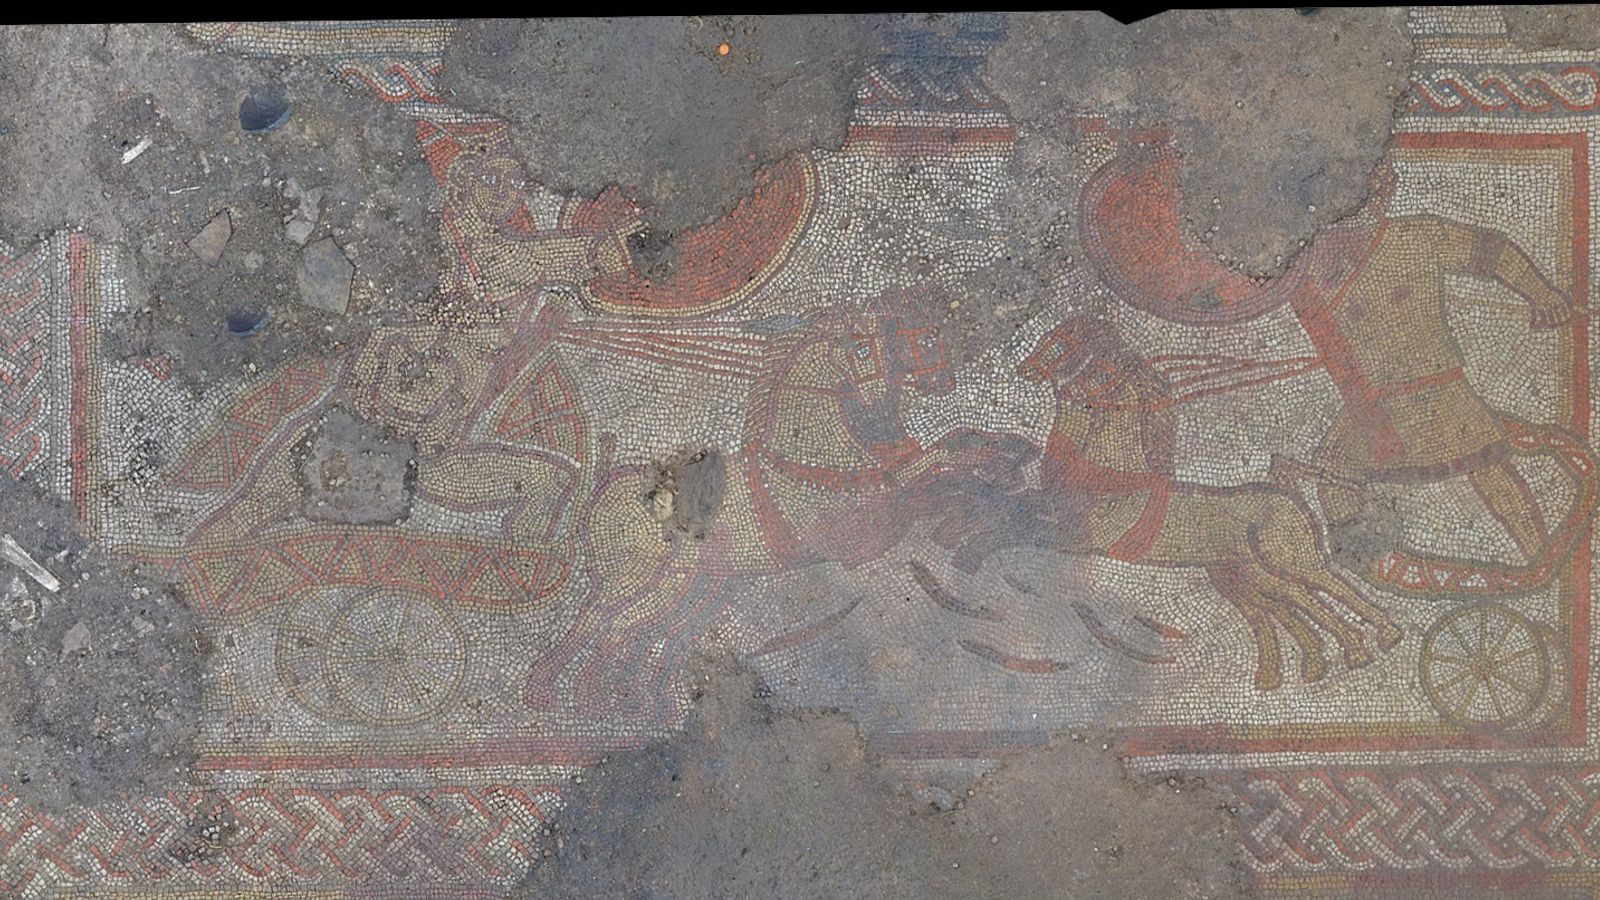 Mosaik Romawi yang ‘luar biasa’ dan langka ditemukan di ladang petani di Rutland |  Berita Inggris